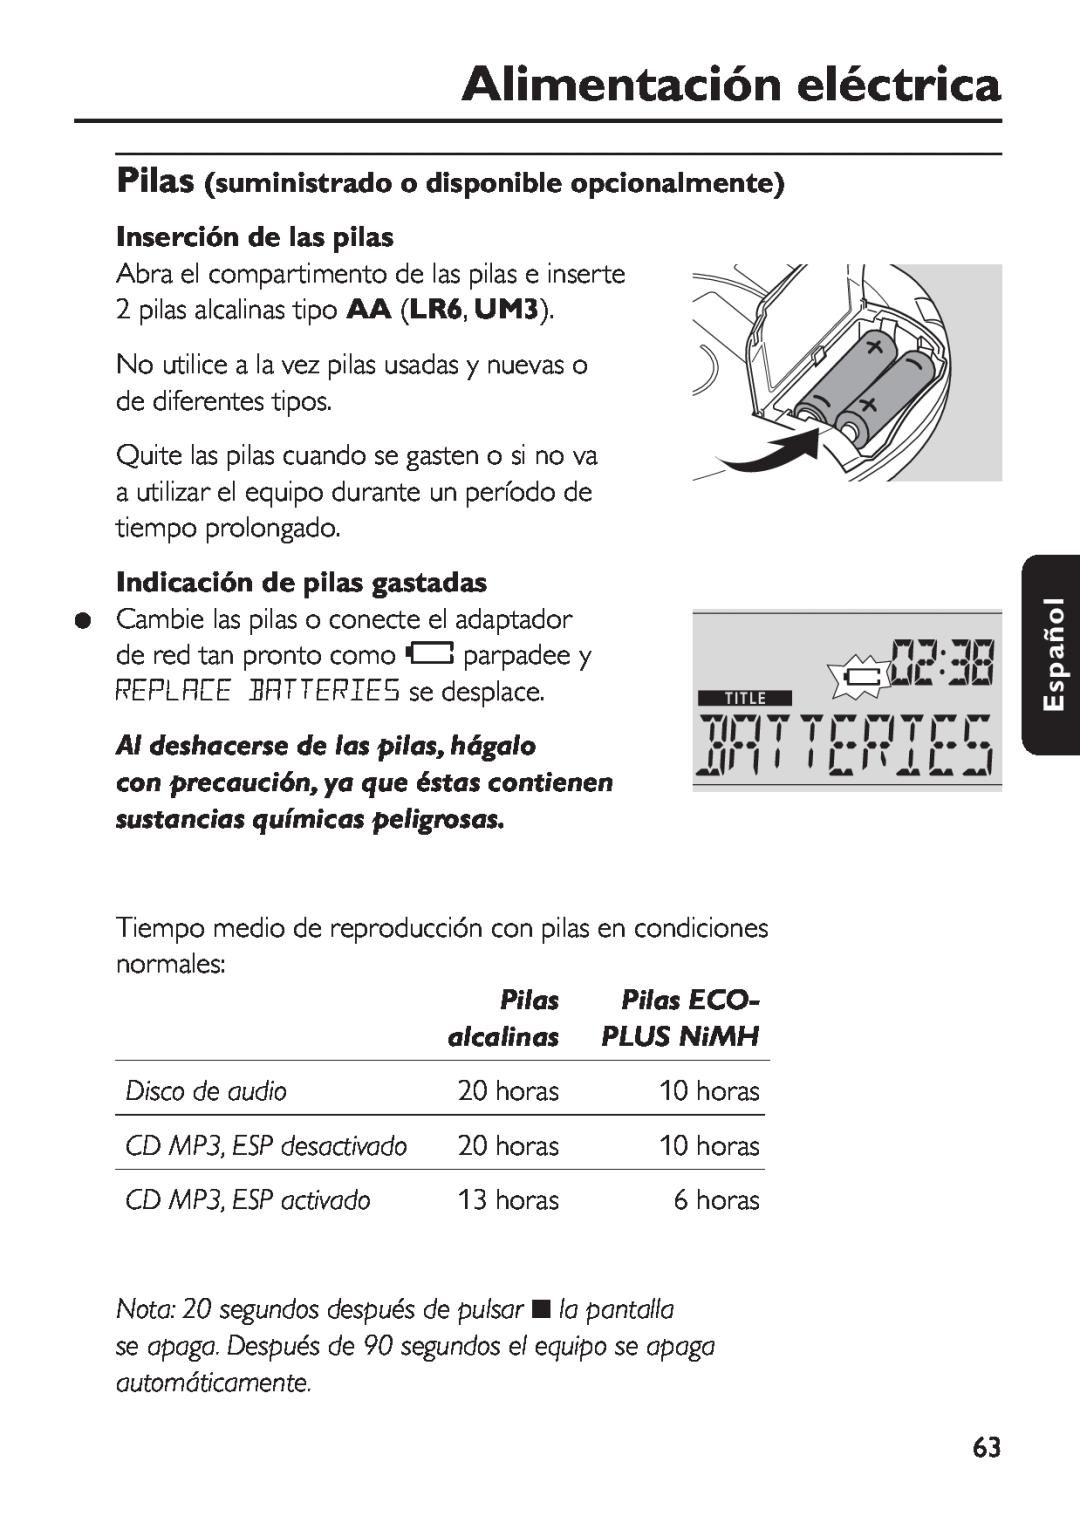 Philips EXP 501/00 Alimentación eléctrica, Pilas suministrado o disponible opcionalmente Inserción de las pilas, horas 